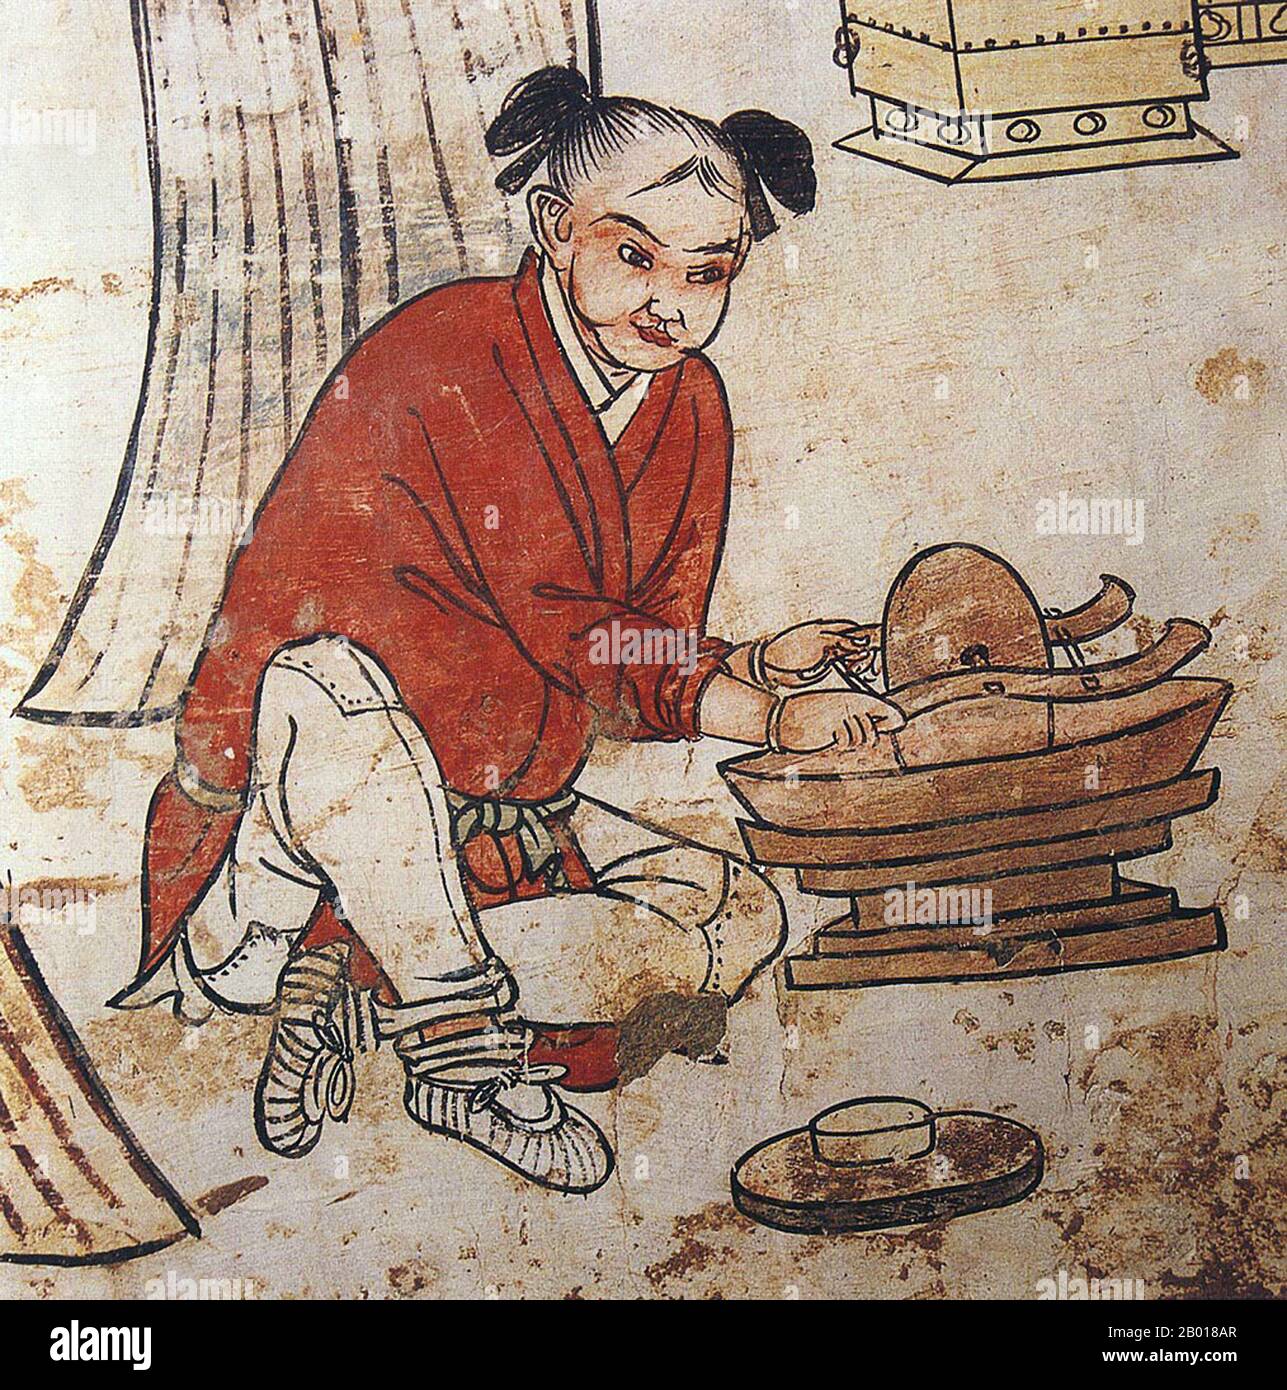 Cina: Un uomo che prepara il tè. Particolare di un murale nella tomba di Zhang Kuangzheng, Xuanhua, Hebei, Dinastia Liao (1093-1117). La dinastia di Liao, conosciuta anche come l'Impero Khitan, era uno stato che dominava le regioni di Manciuria, Mongolia, e parti della Cina settentrionale propriamente detta. Fu fondata dal clan Yelü del popolo Khitano nello stesso anno in cui la dinastia Tang crollò (907), anche se il suo primo sovrano, Yelü Abaoji (Yaruud Ambagai Khan), non dichiarò un nome di epoca fino al 916. Foto Stock